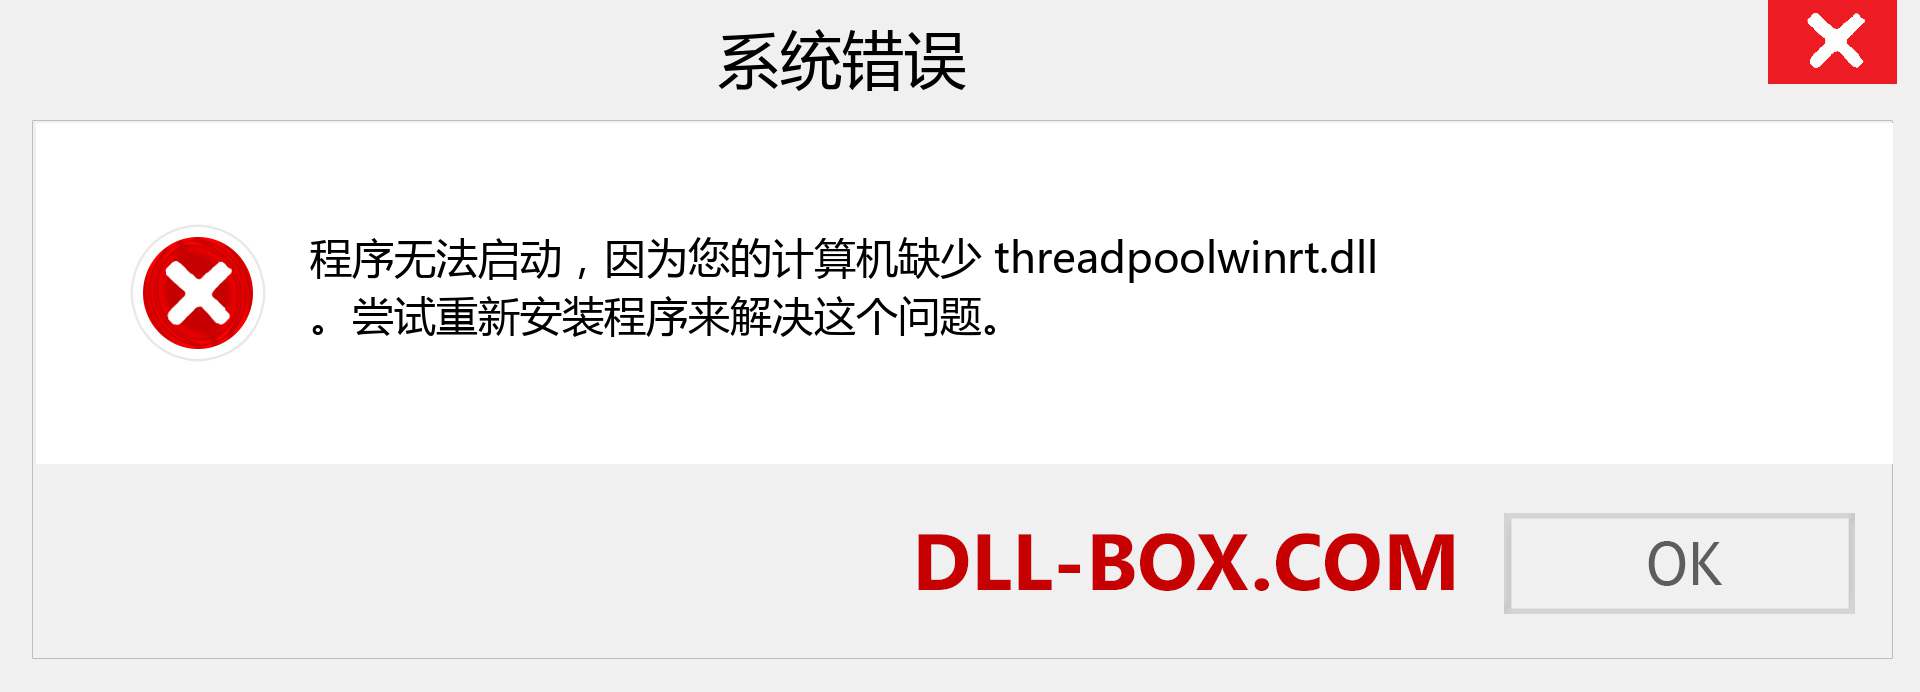 threadpoolwinrt.dll 文件丢失？。 适用于 Windows 7、8、10 的下载 - 修复 Windows、照片、图像上的 threadpoolwinrt dll 丢失错误